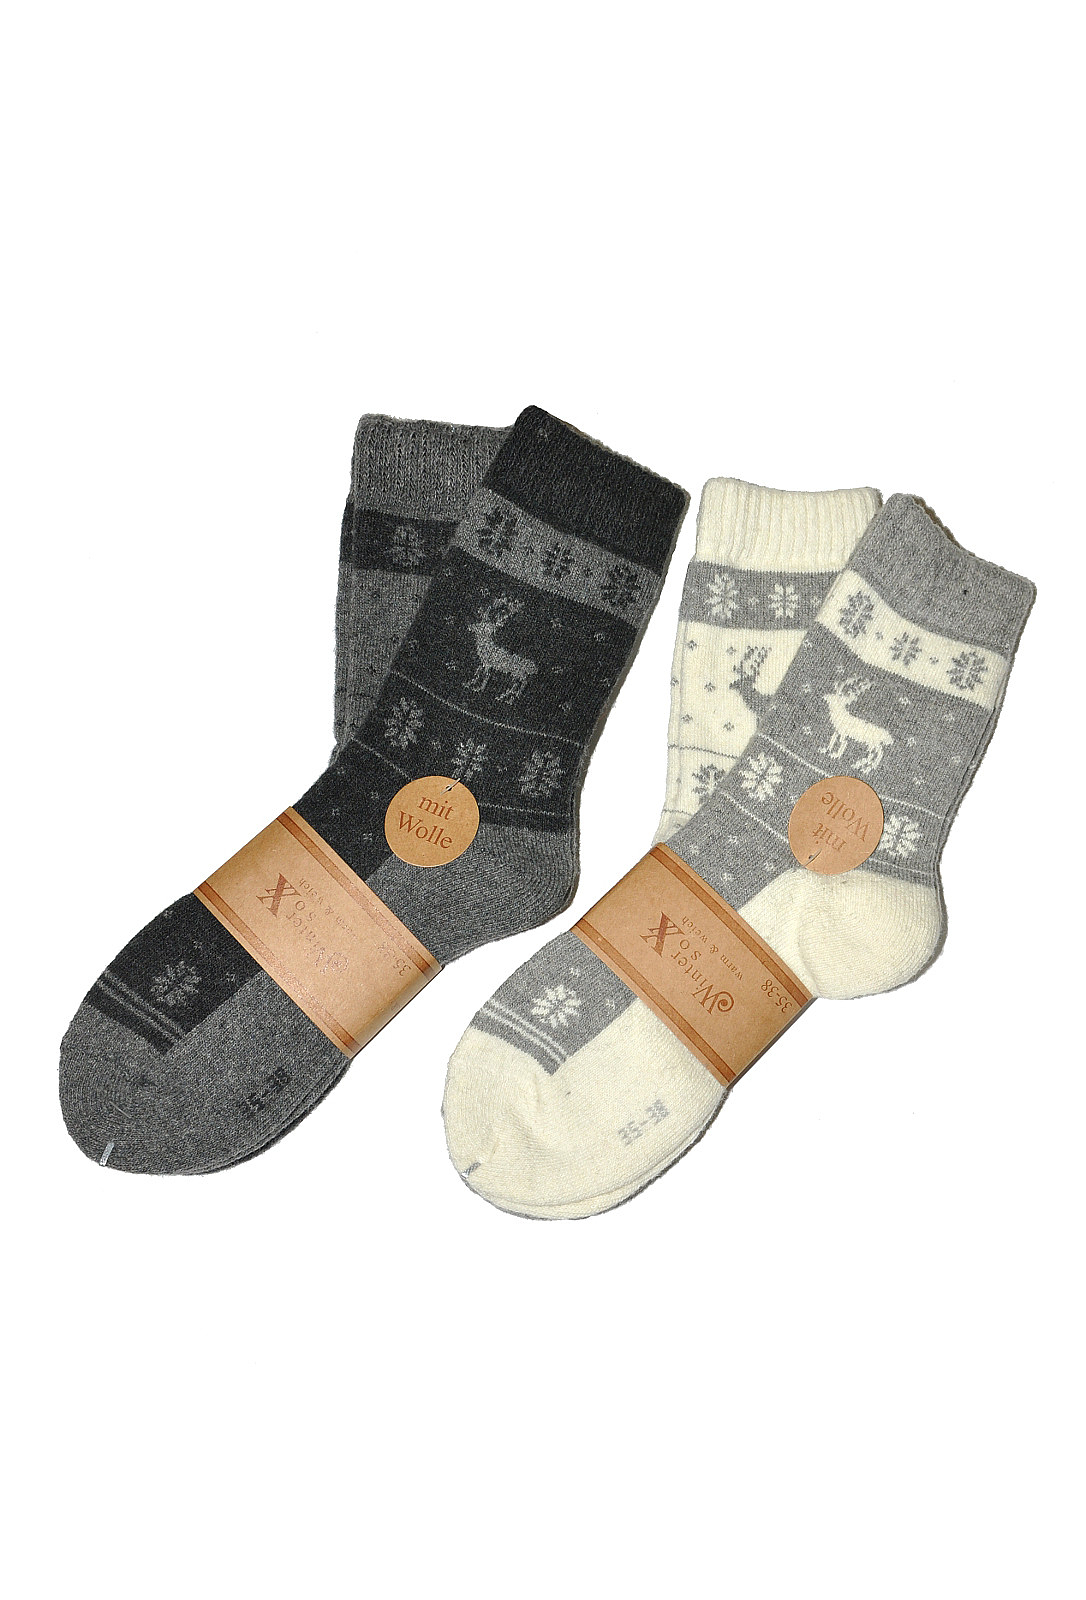 Dámské ponožky WiK Winter art.37820 A'2